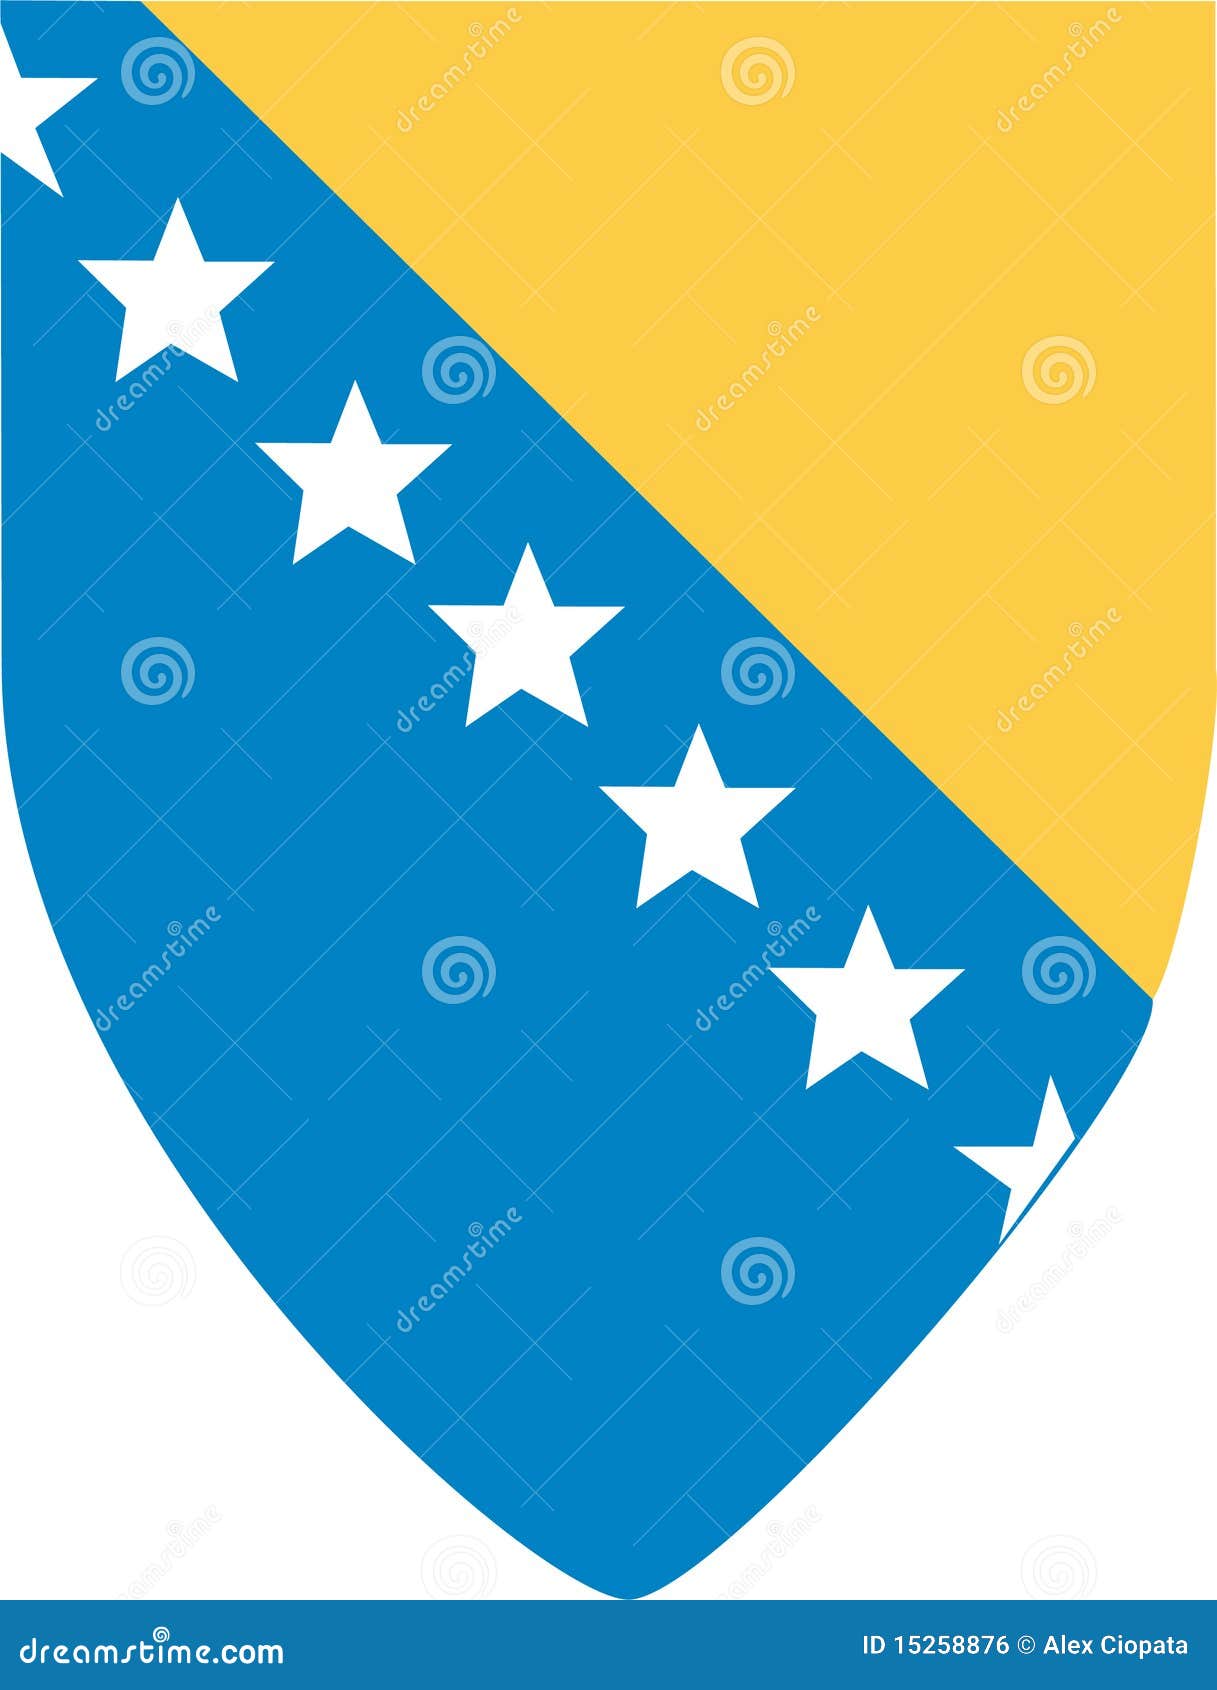 Bosnien - herzegovina. Arms white för den Bosnienlagherzegovina illustrationen isolerad vektorn